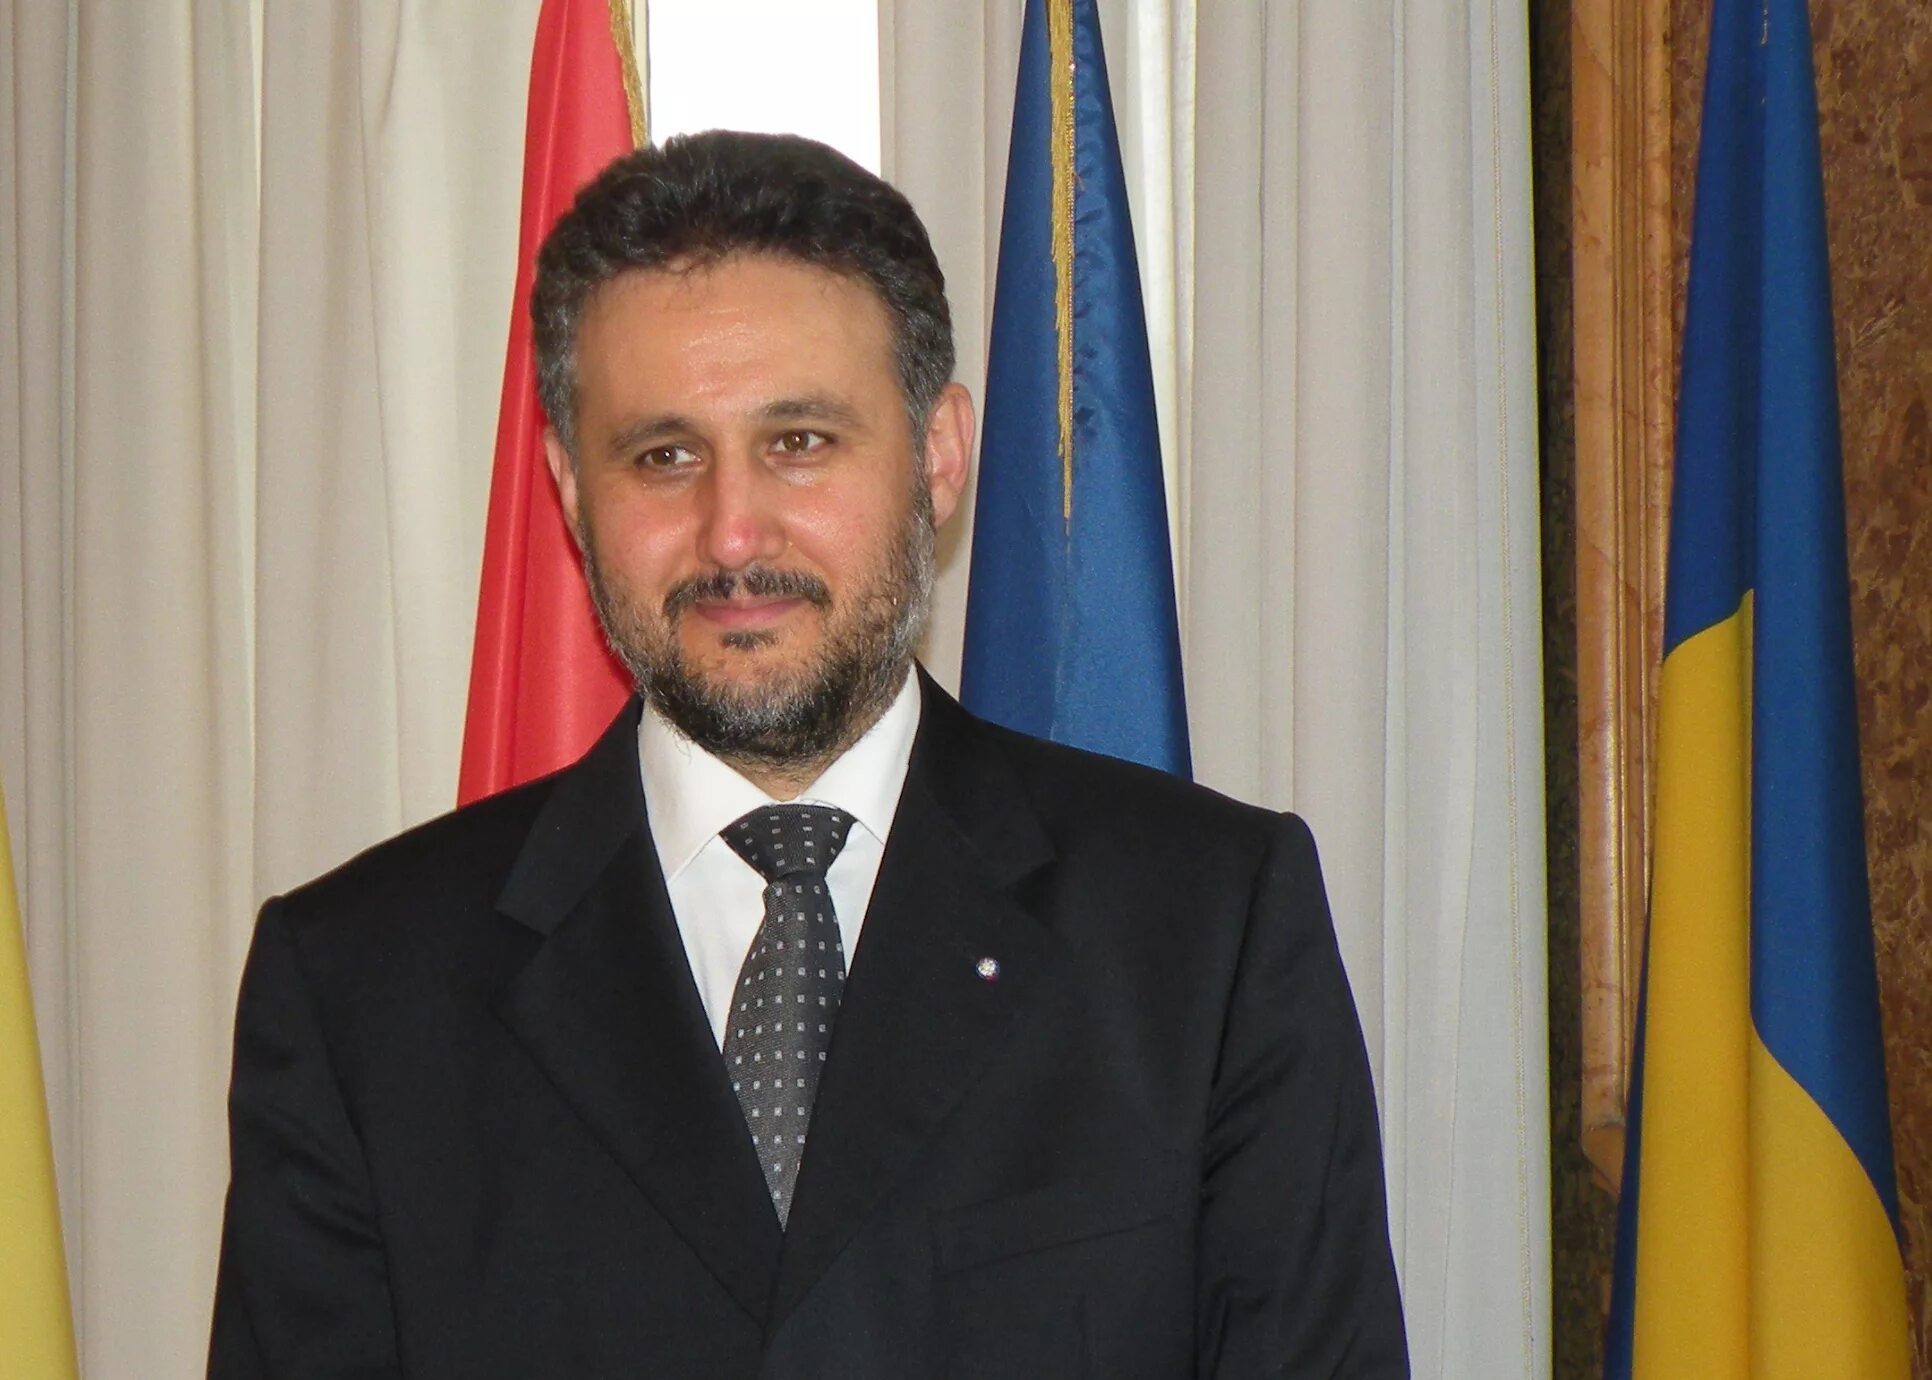 Посол румынии. Посол России в Румынии. Посол Молдовы в Румынии. Посол Украины в Румынии в 2003 году. Фото послов Румынии.